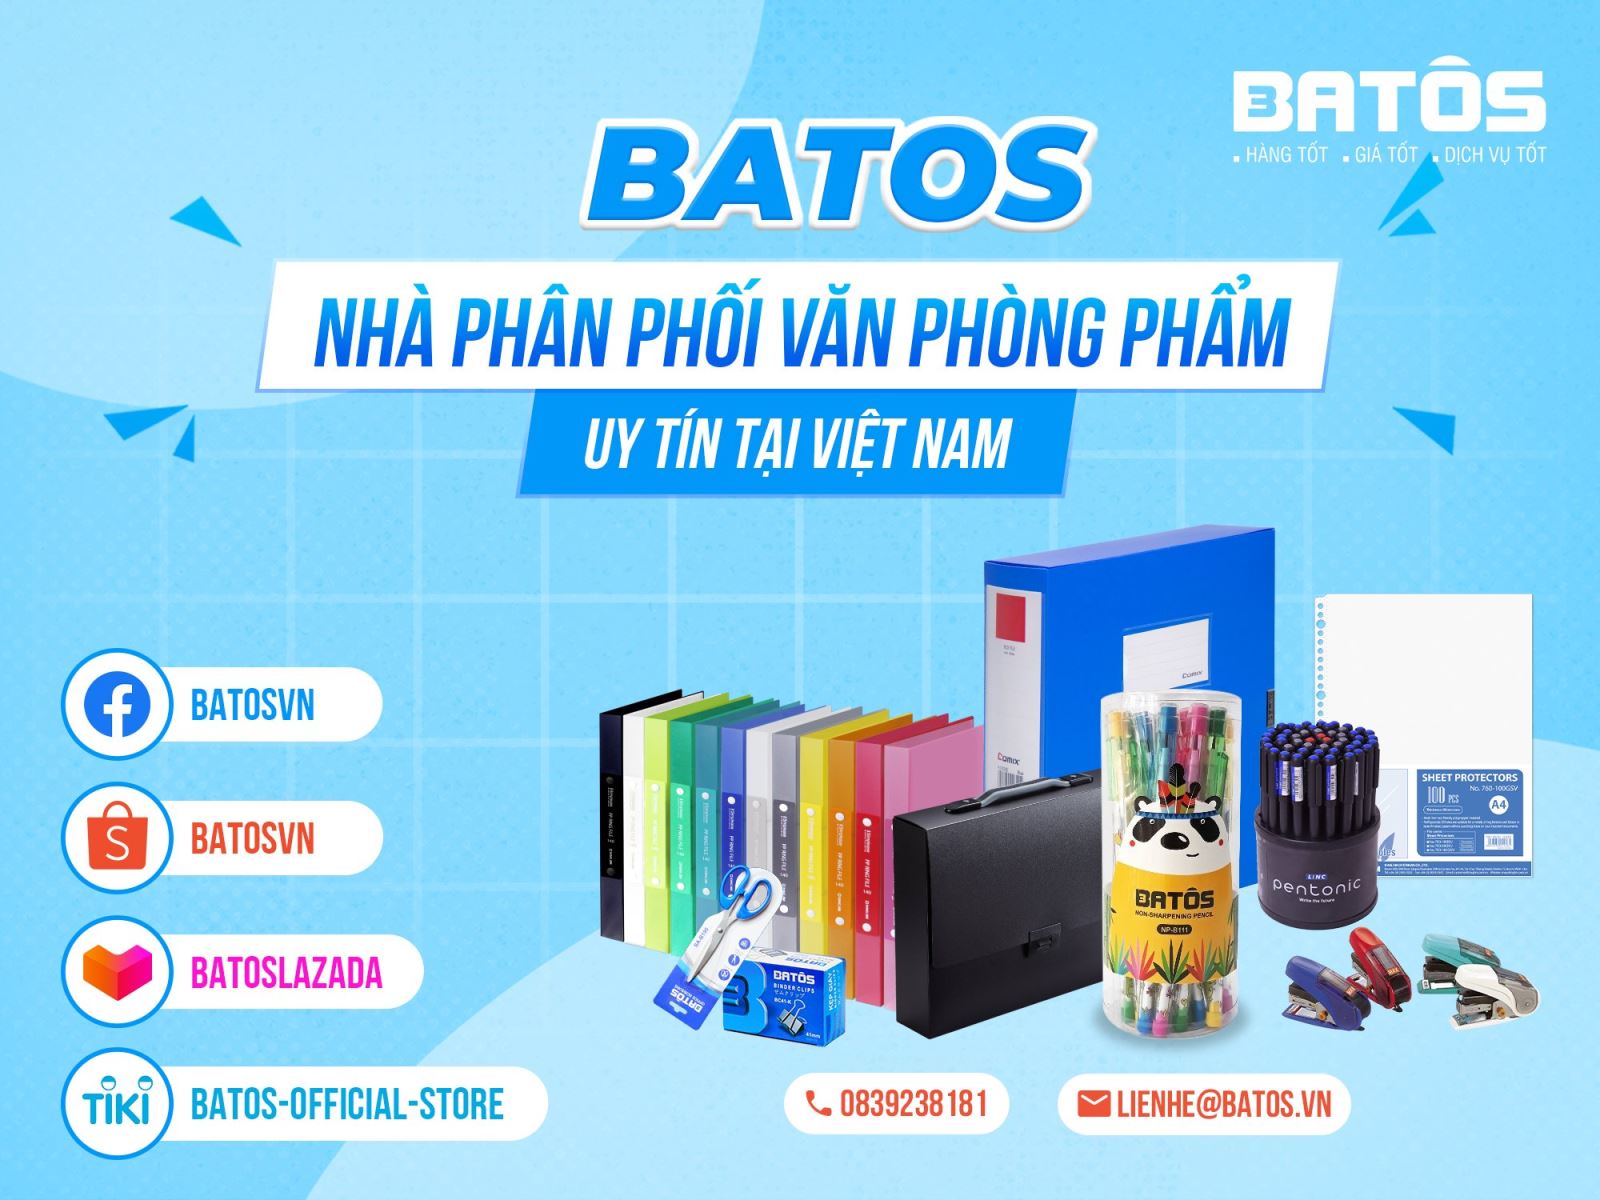 Batos nhà phân phối văn phòng phẩm uy tín tại Việt Nam